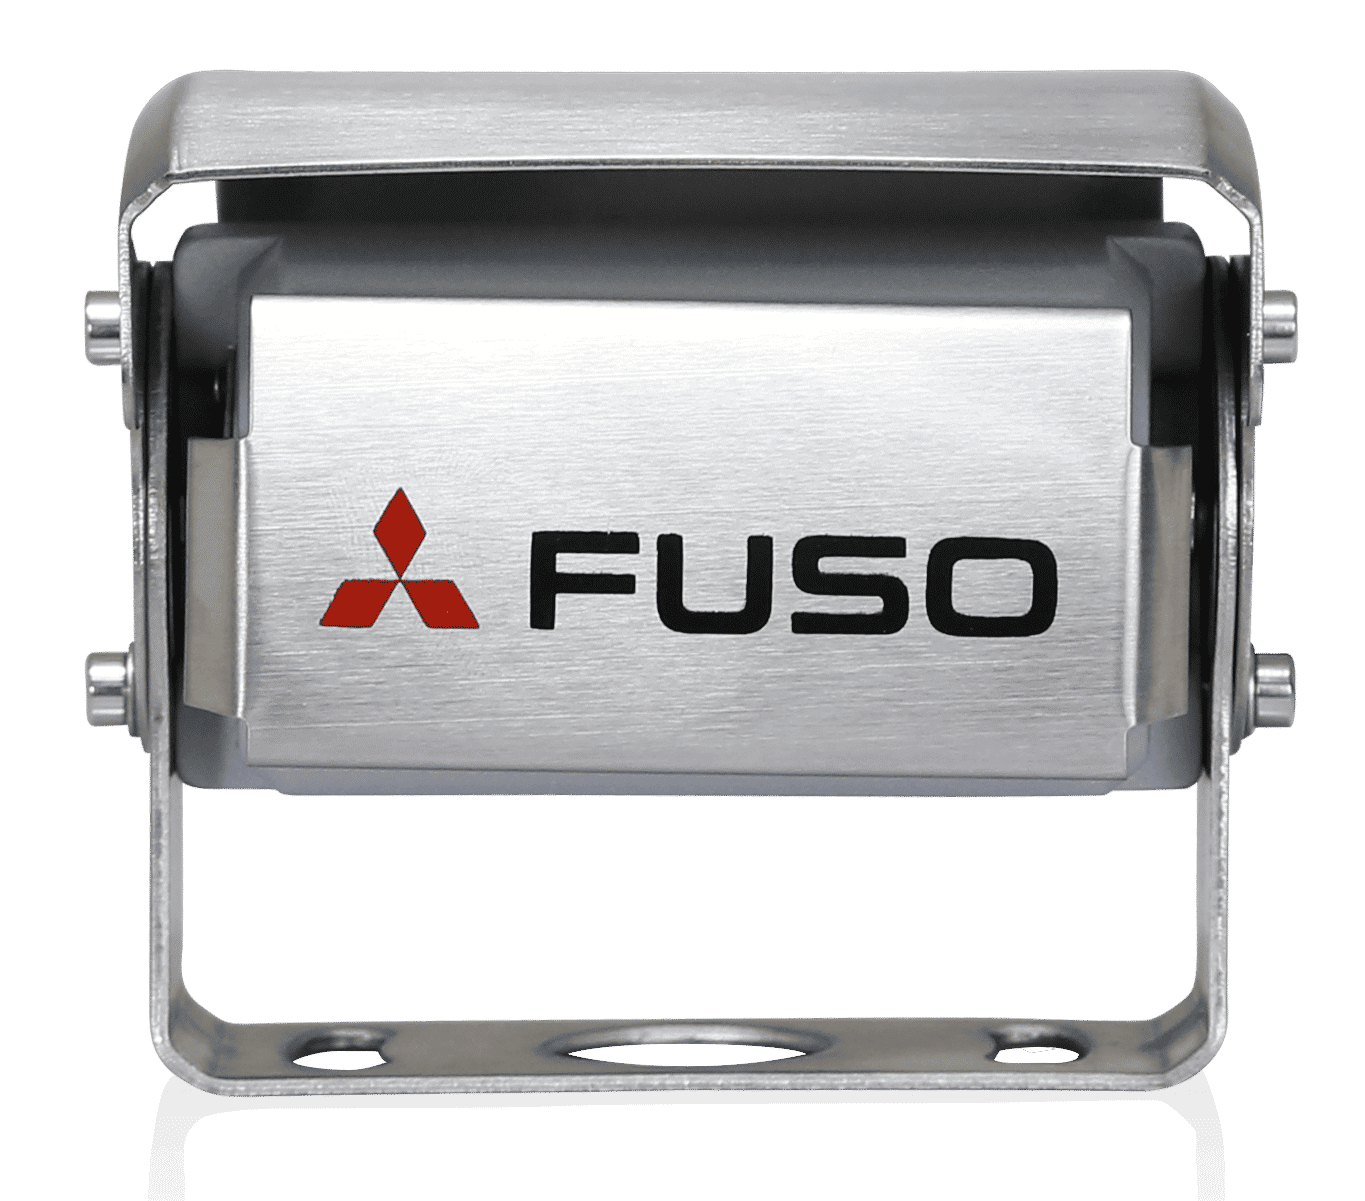 FUSO ryggekamera er et effektivt produkt som forener fordelene beste sikt og høyeste sikkerhet. Den har en integrert mikrofon som sørger for en bedre fornemmelse av området bak kjøretøyet. I mørket endres fargen på displayet automatisk for å gi sjåføren optimal sikt. Systemet kan brukes med 12 og 24 V og oppfyller de strengeste FUSO-testkrav. Kameraet er vanntett iht. IP69K. Displayet har en oppløsning på 800x480x3 (RGB).